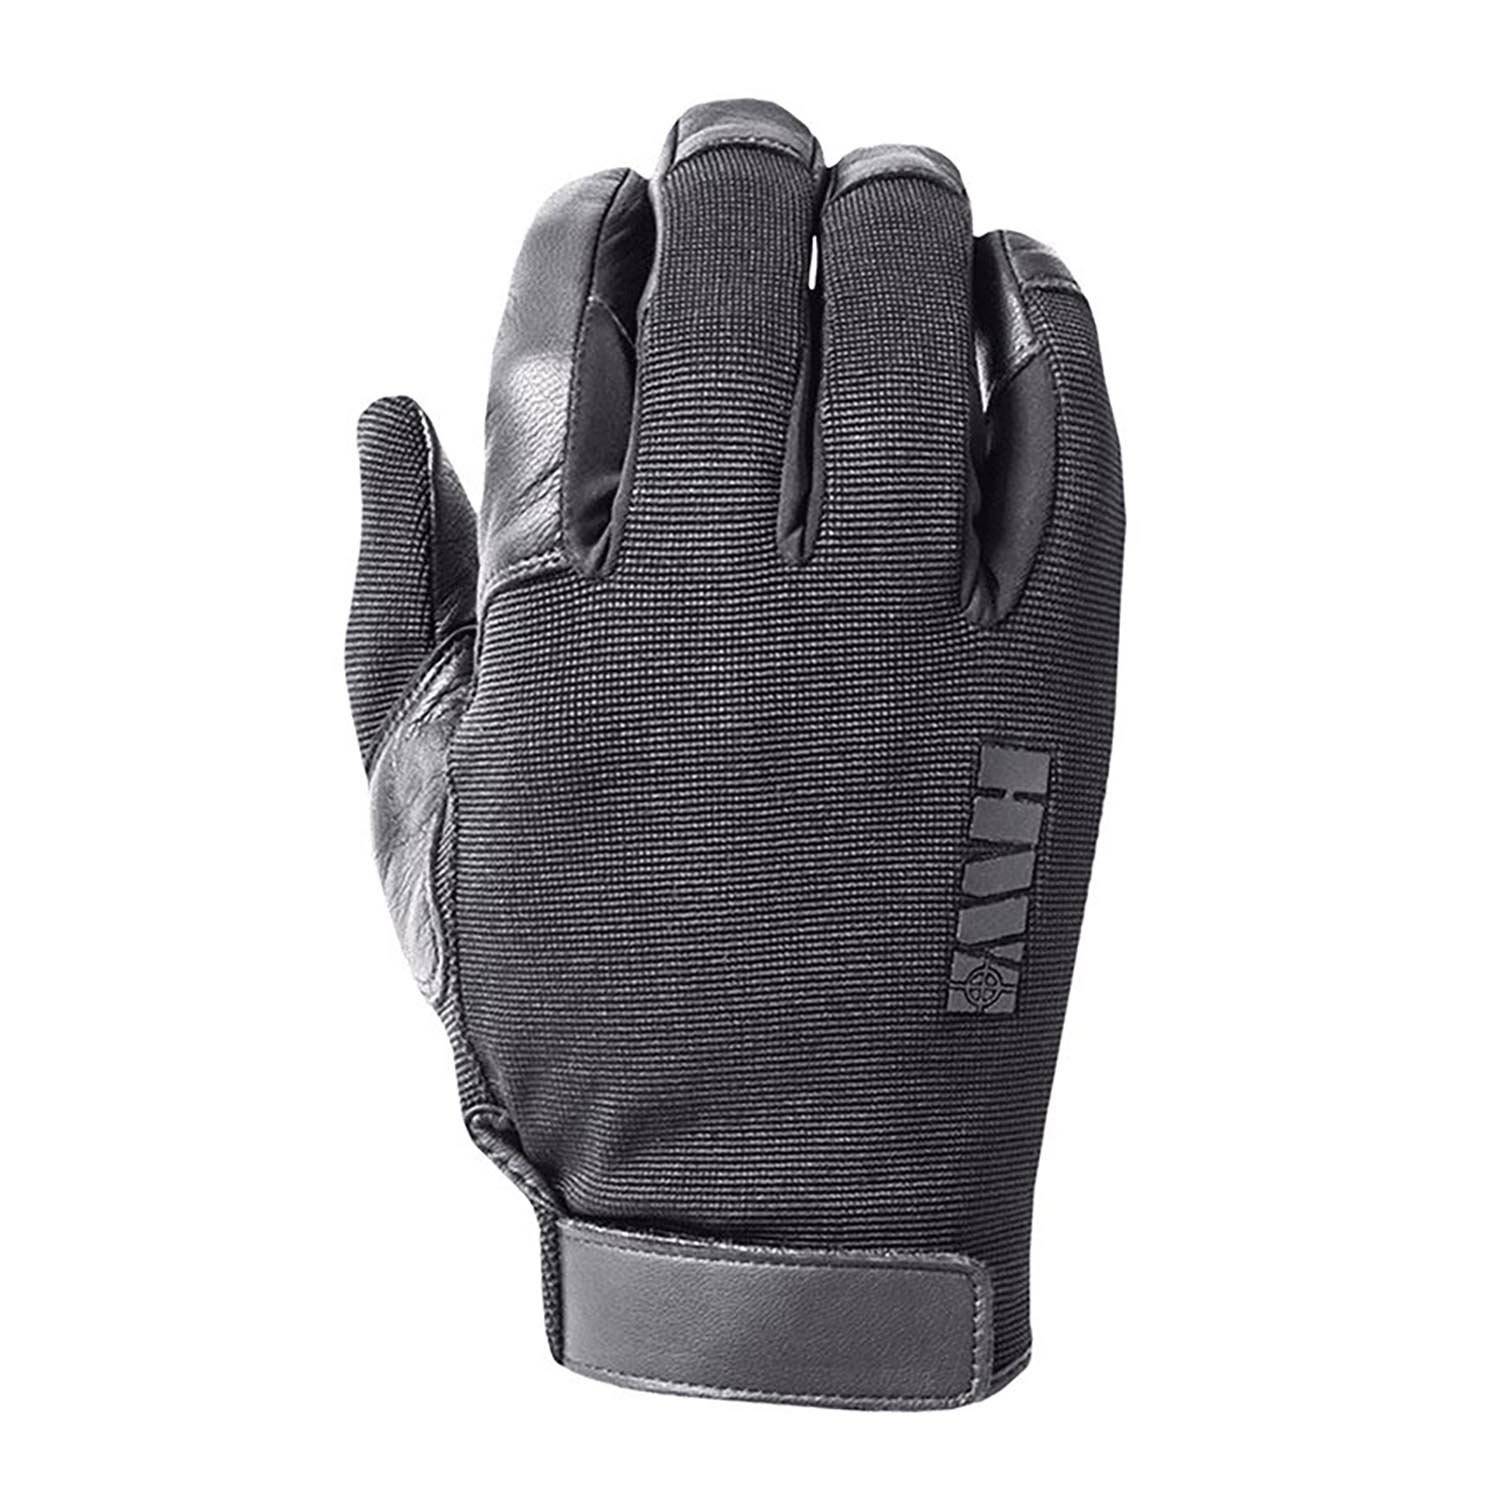 HWI Gear Spectra Lined Duty Gloves, DLD100